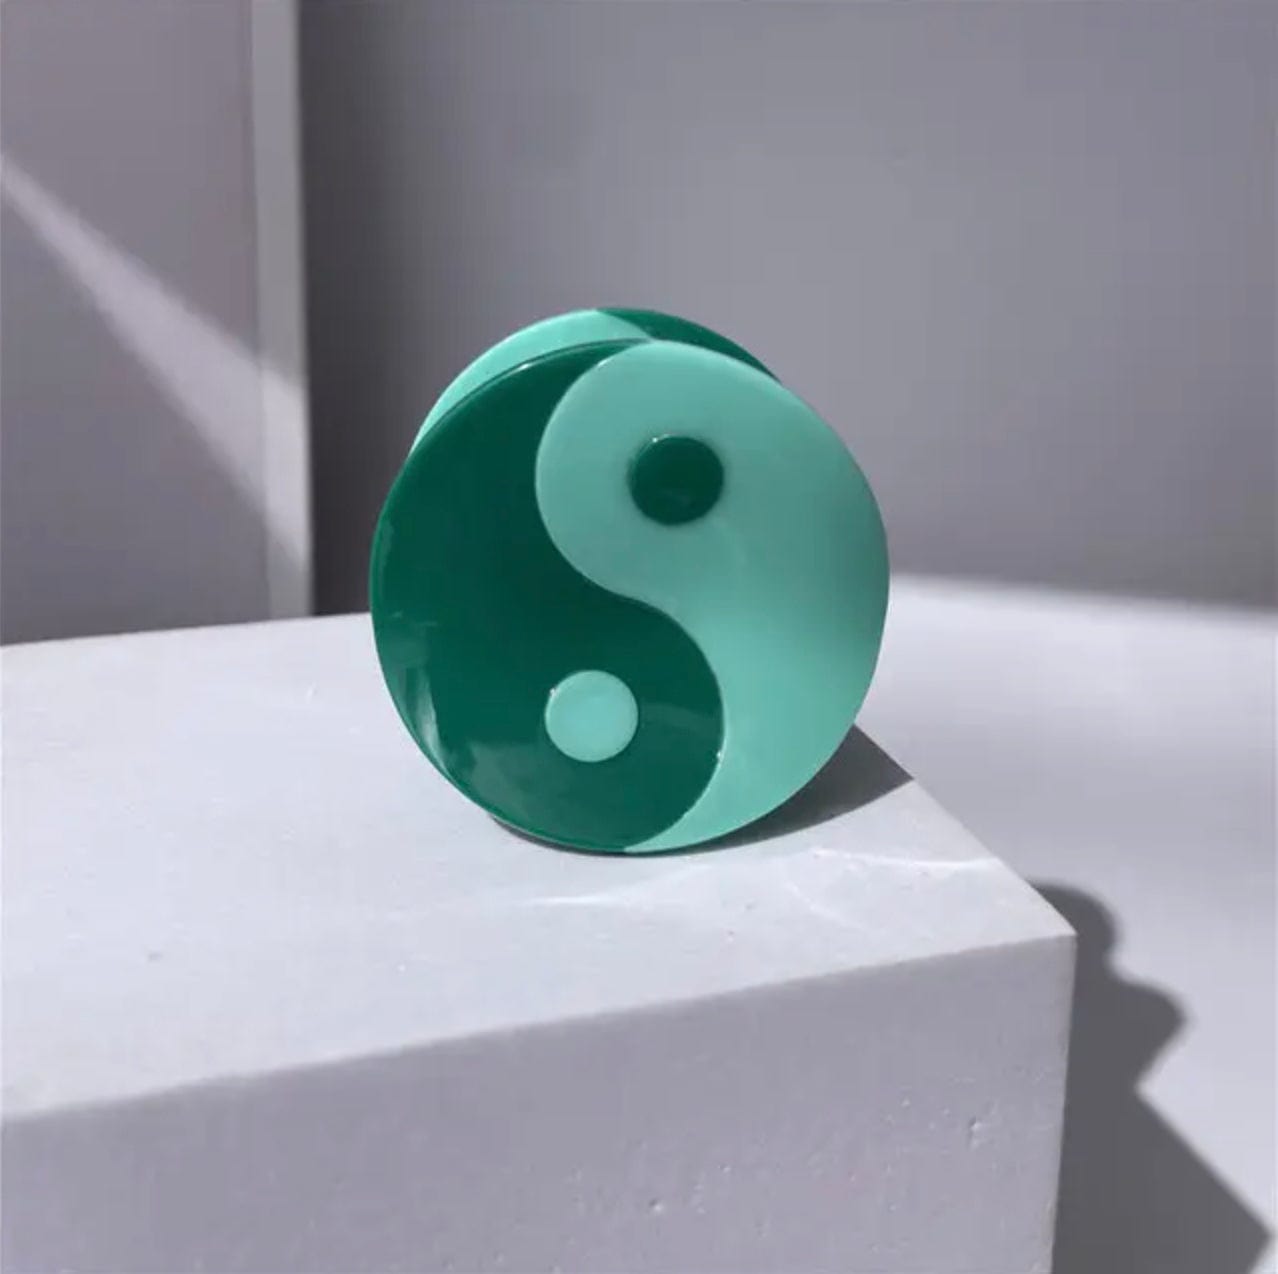 Frøken Dianas salonger hårpynt Hårklype -  Yin Yang - grønn foto av en rund hårklype formet som et yin yang symbol i grønne fargetoner